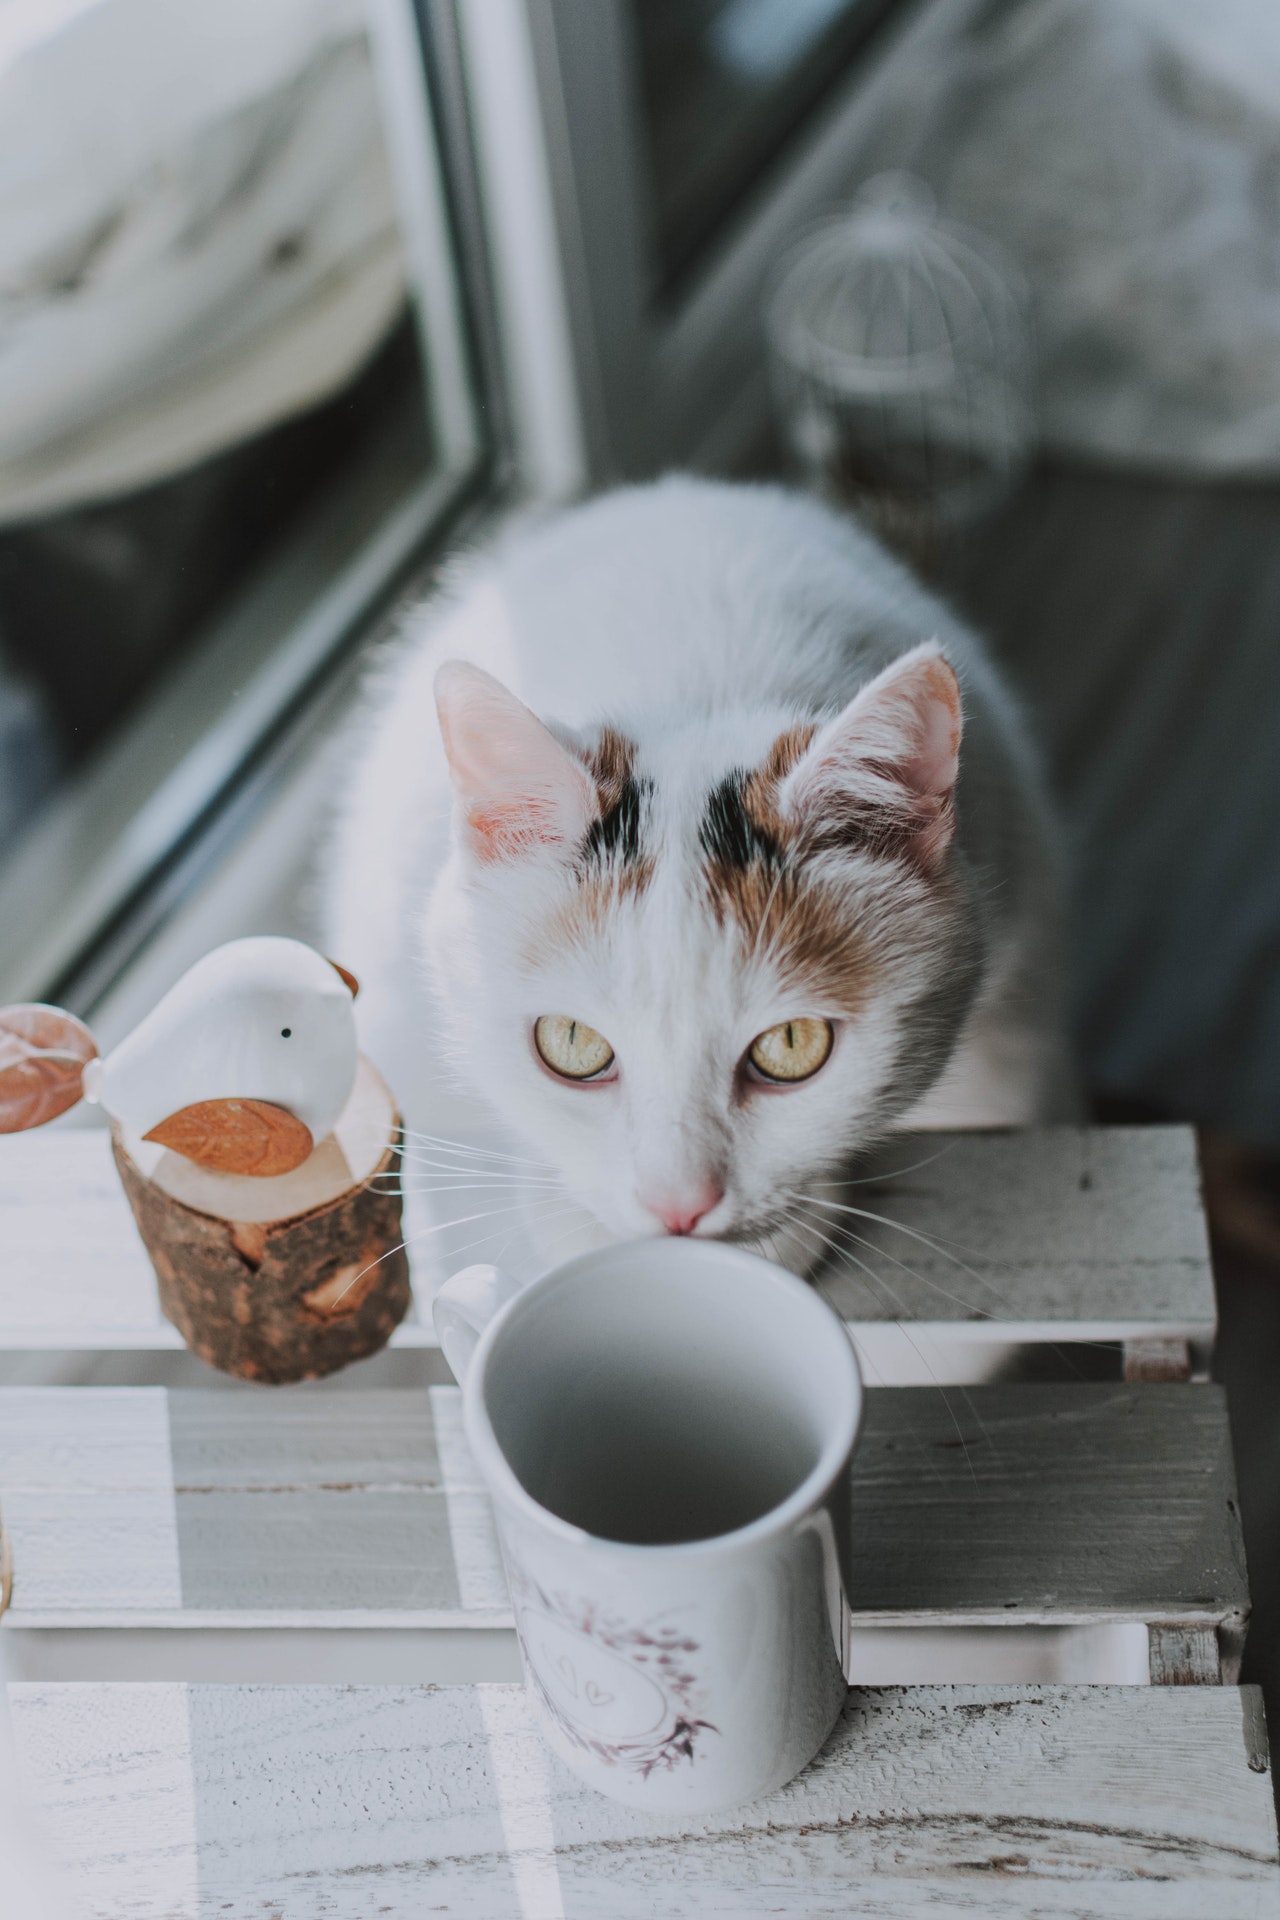 Cat looking at a coffee mug